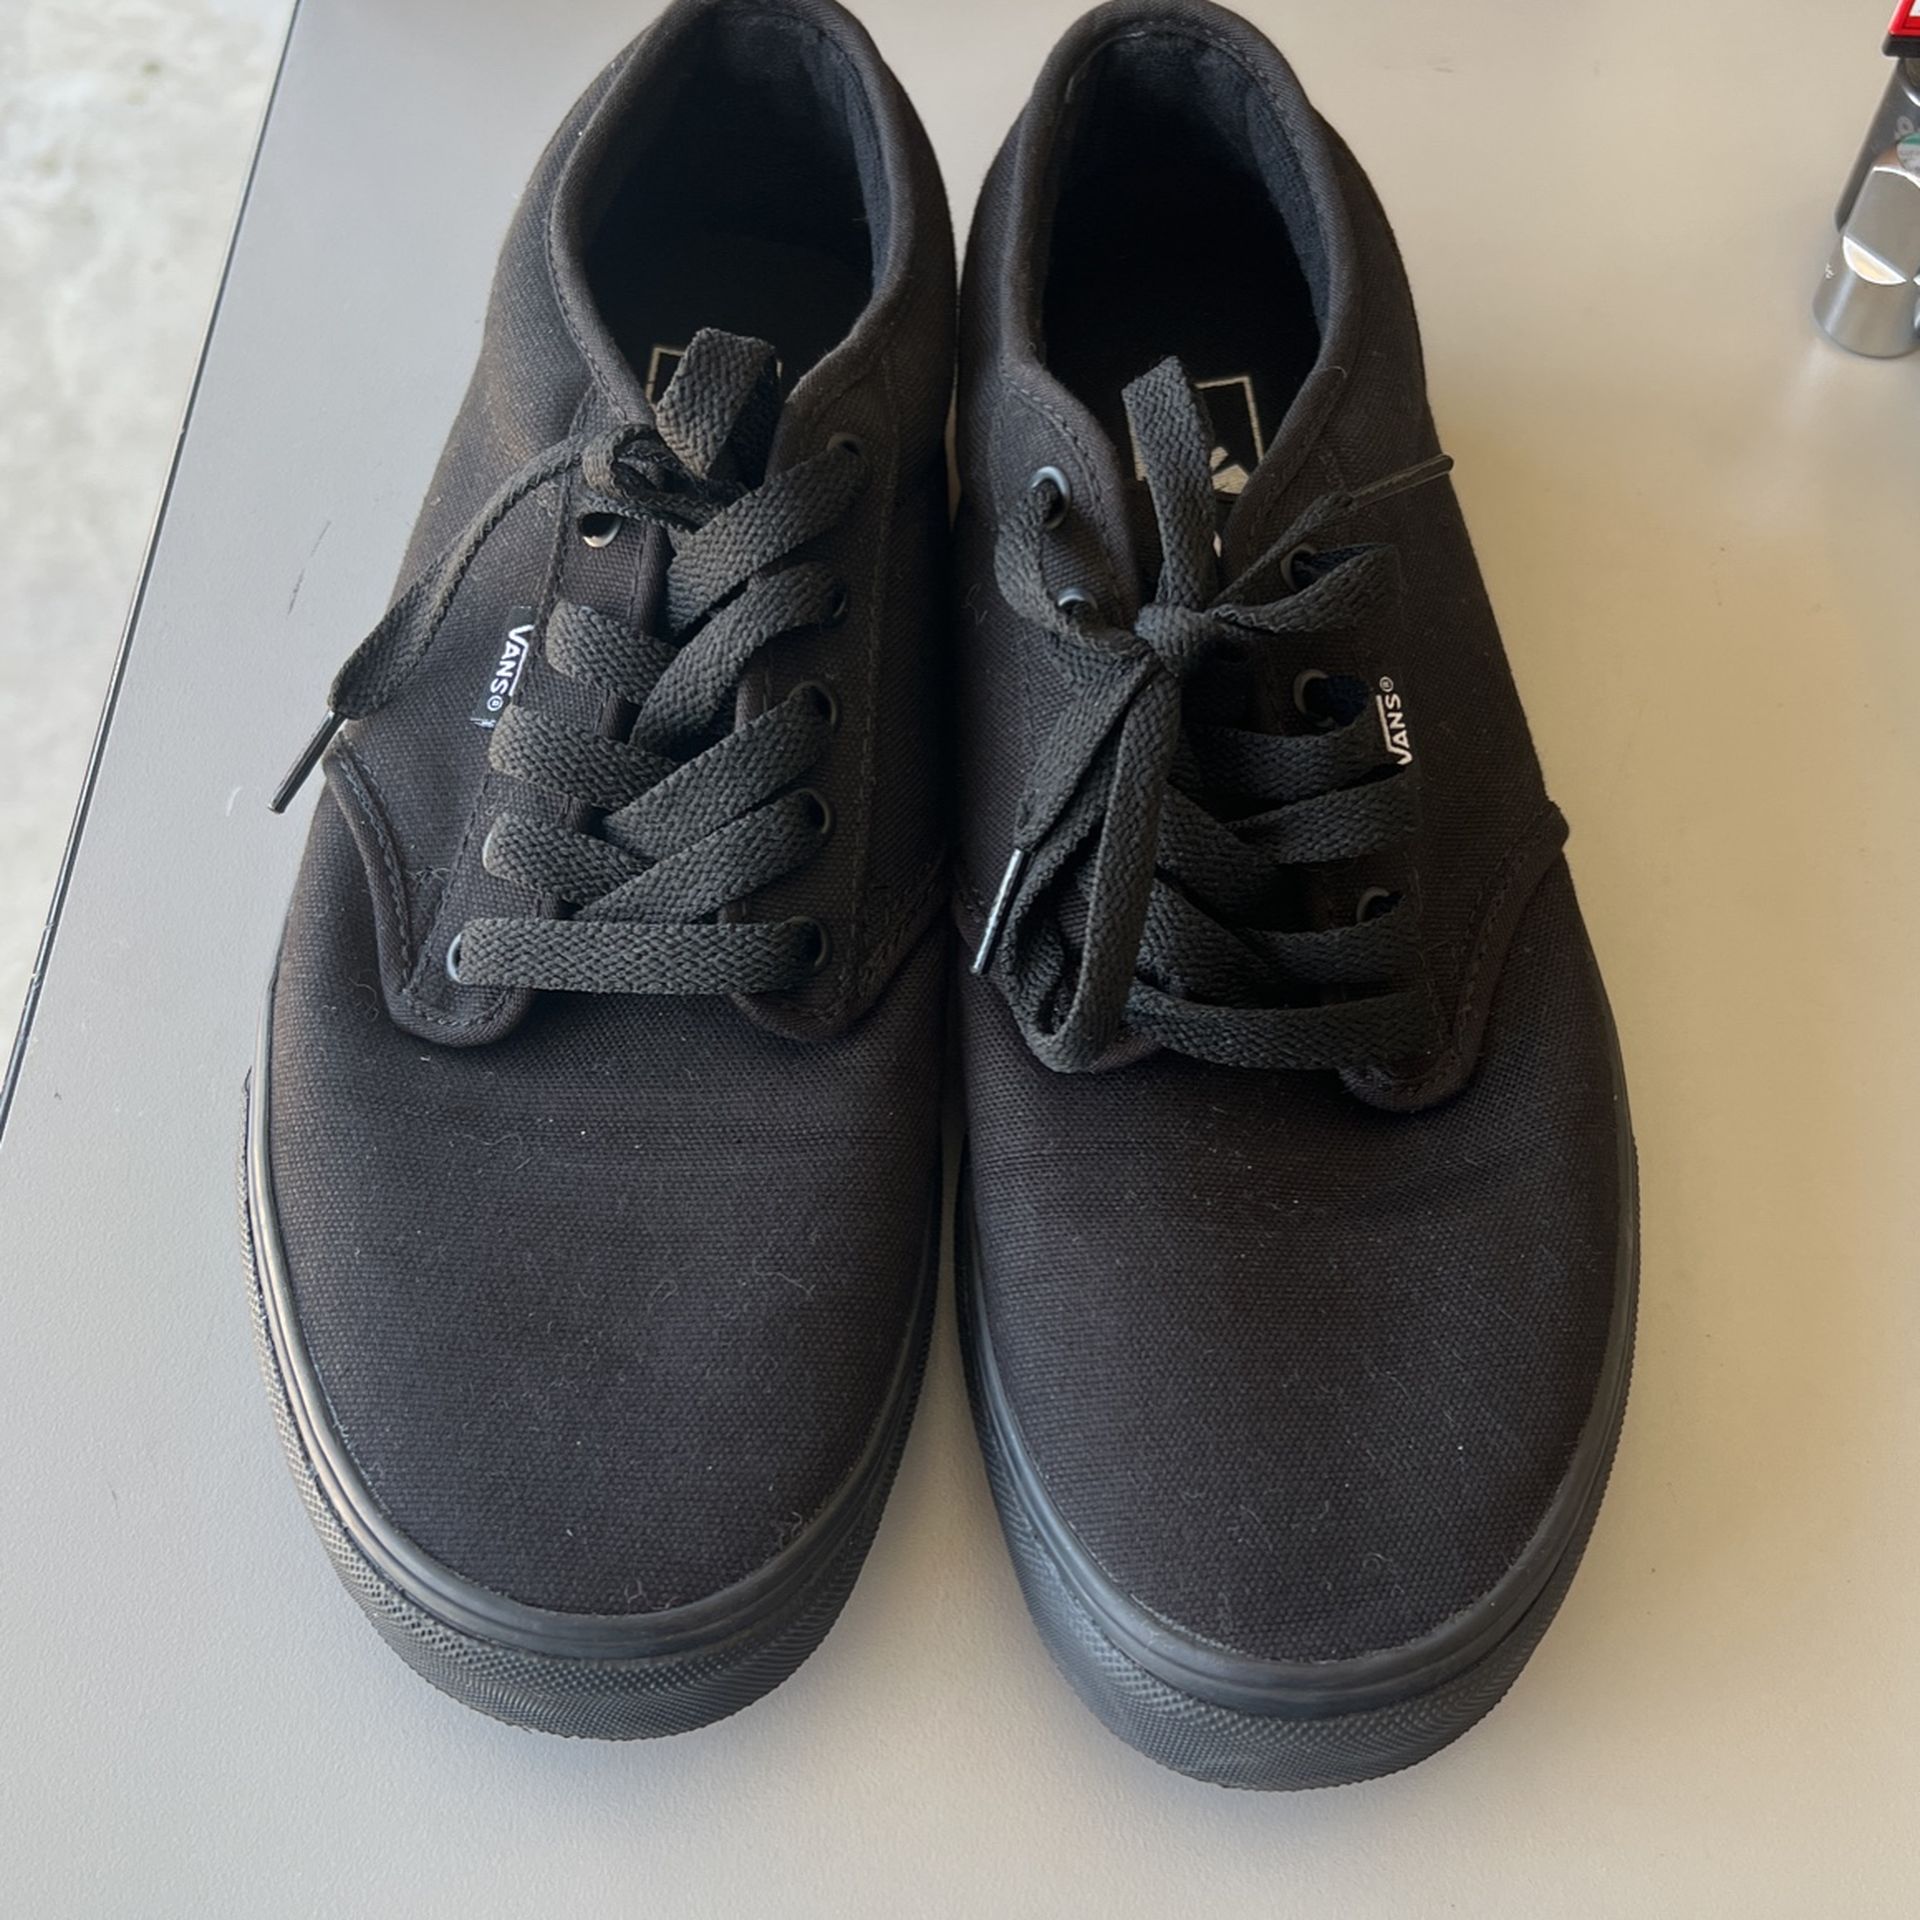 Vans Black Shoes 12.0 